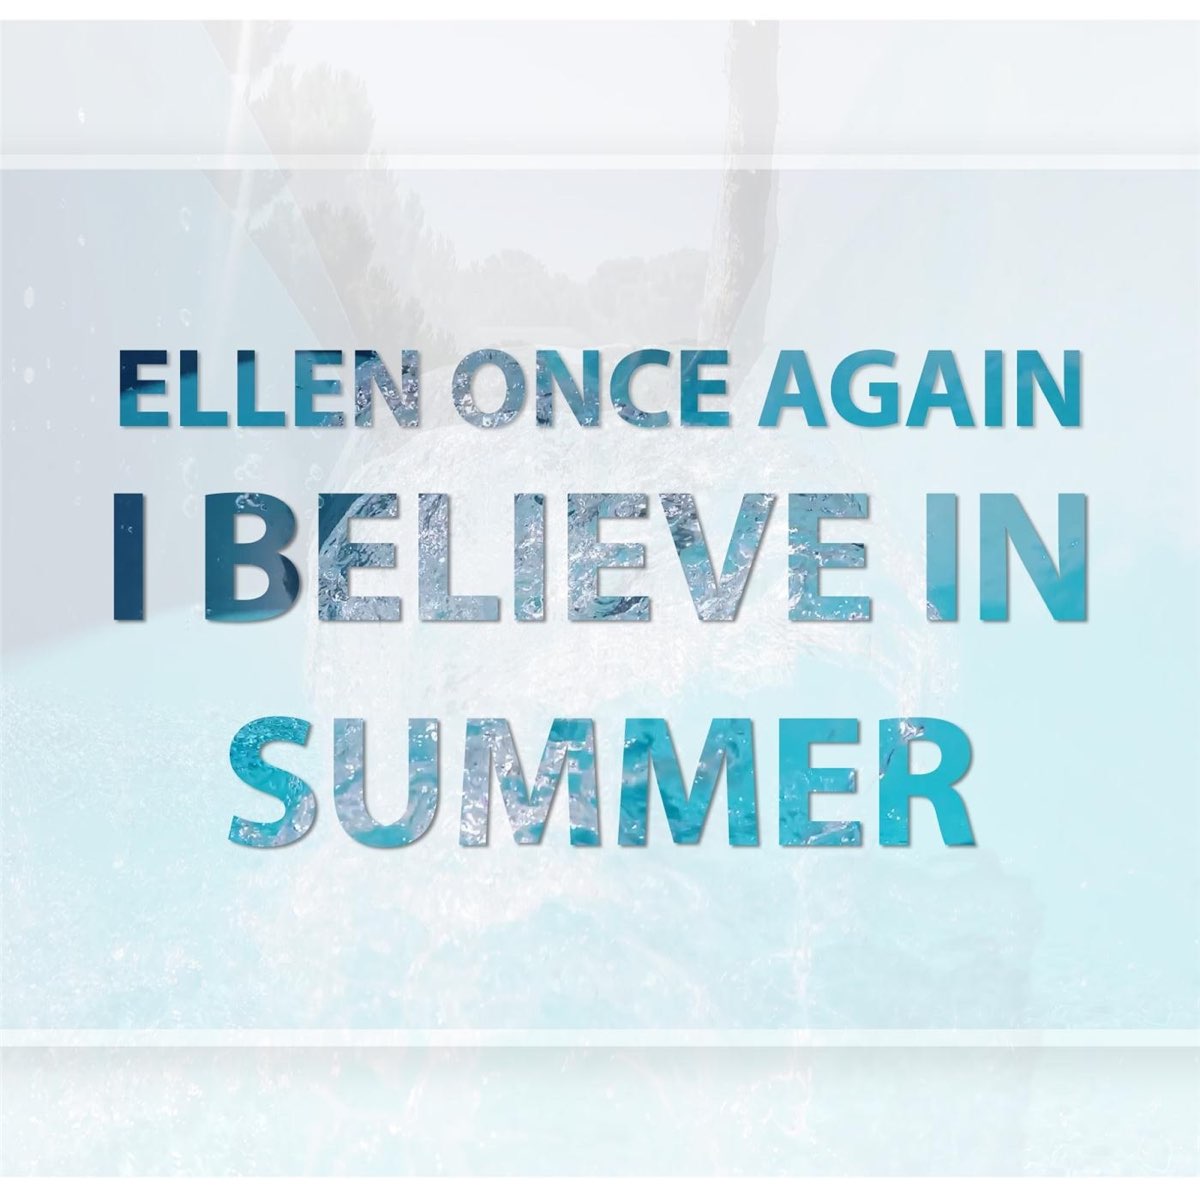 Believe tonight. Ellen once again. Песня believe me. I wanna believe песня. Песня believe in Love.